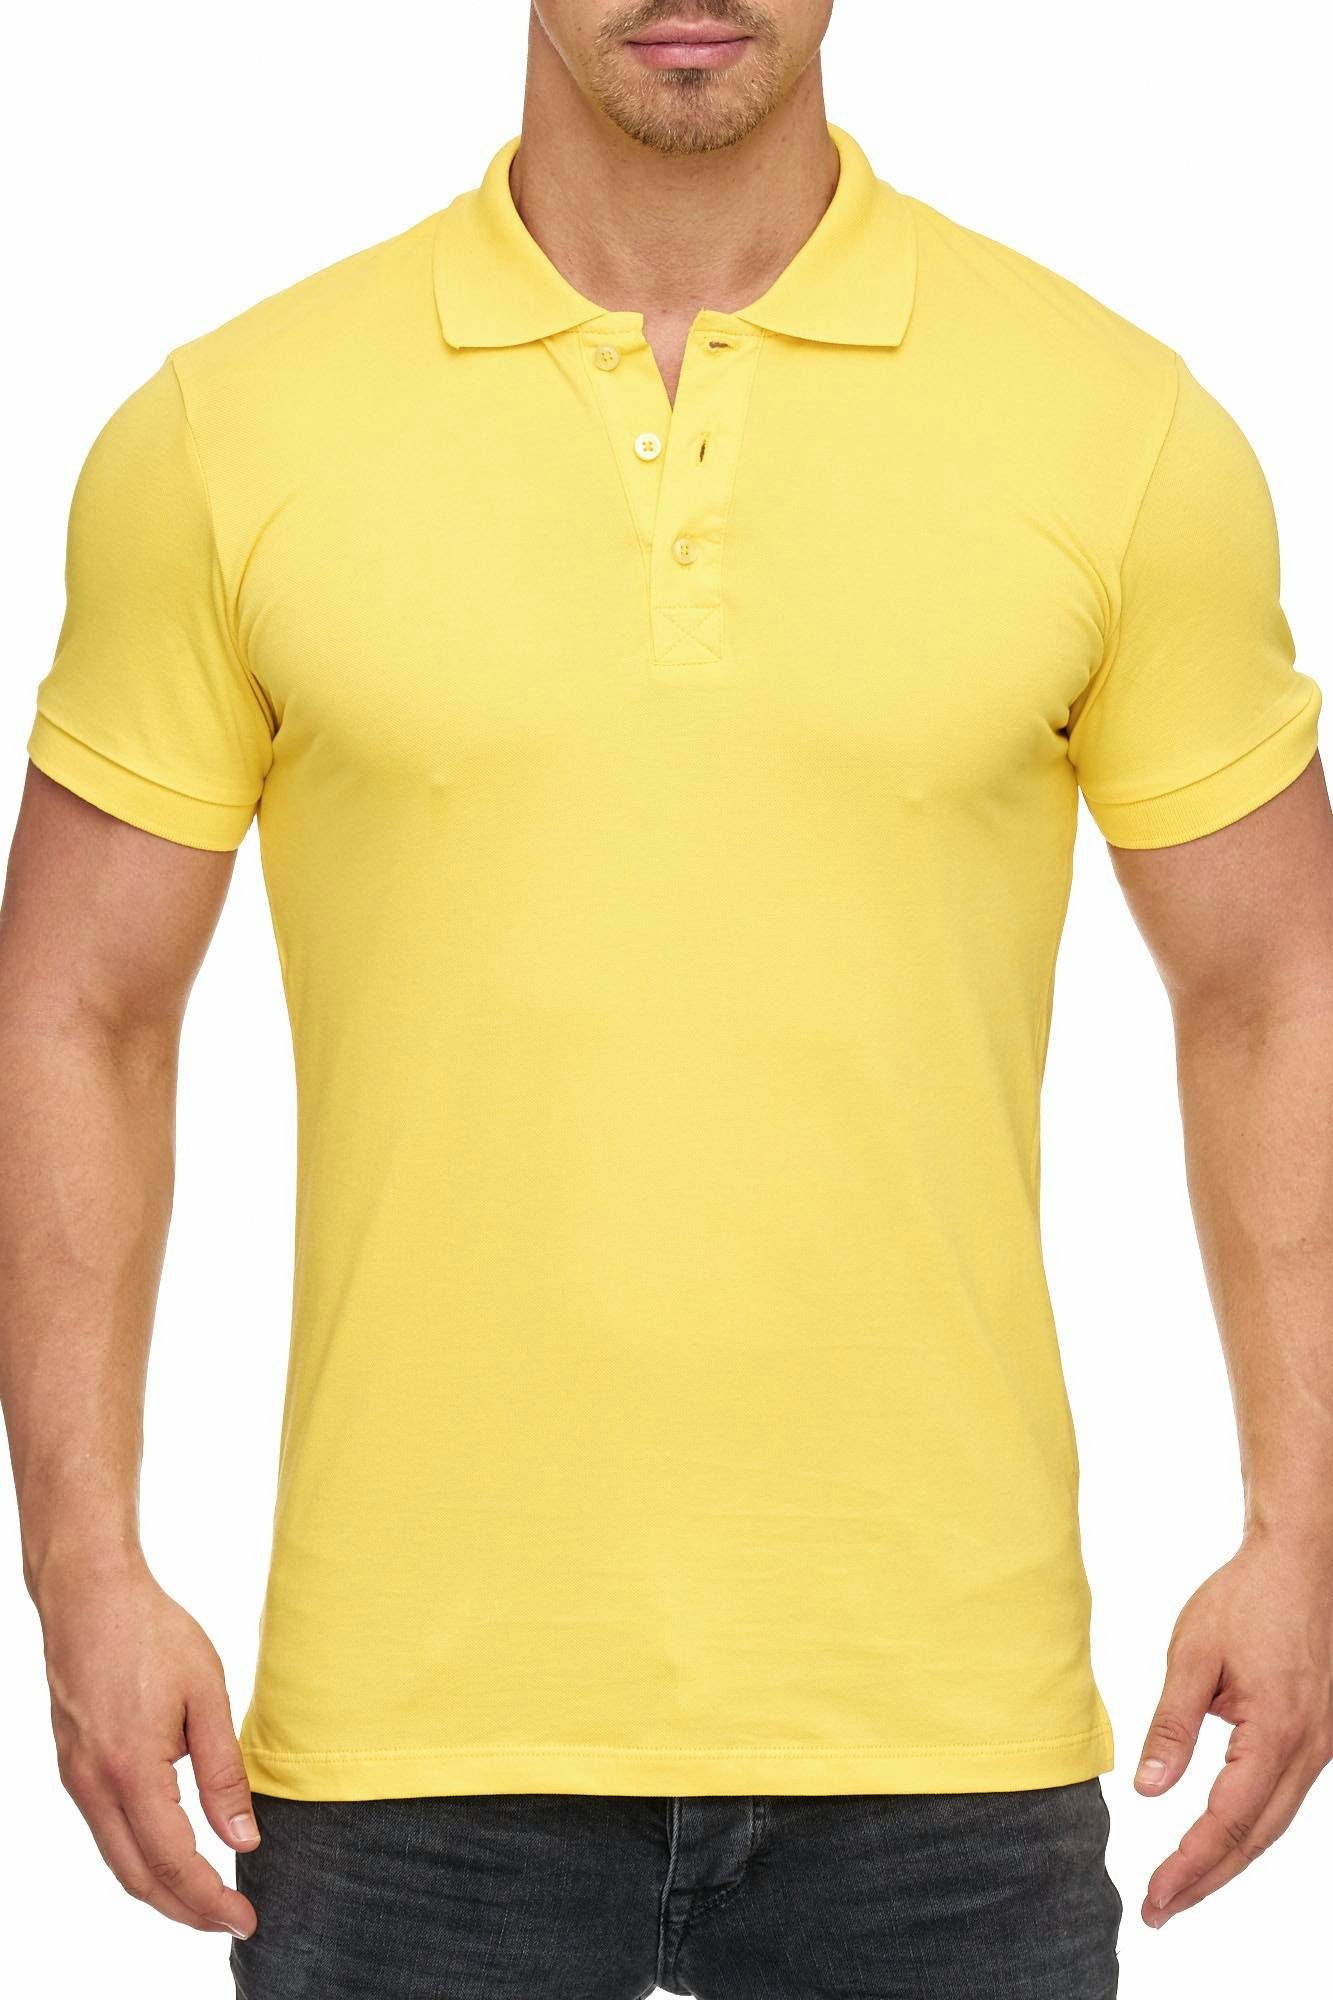 Tazzio Poloshirt 17101 zeitloses Polo Shirt gelb